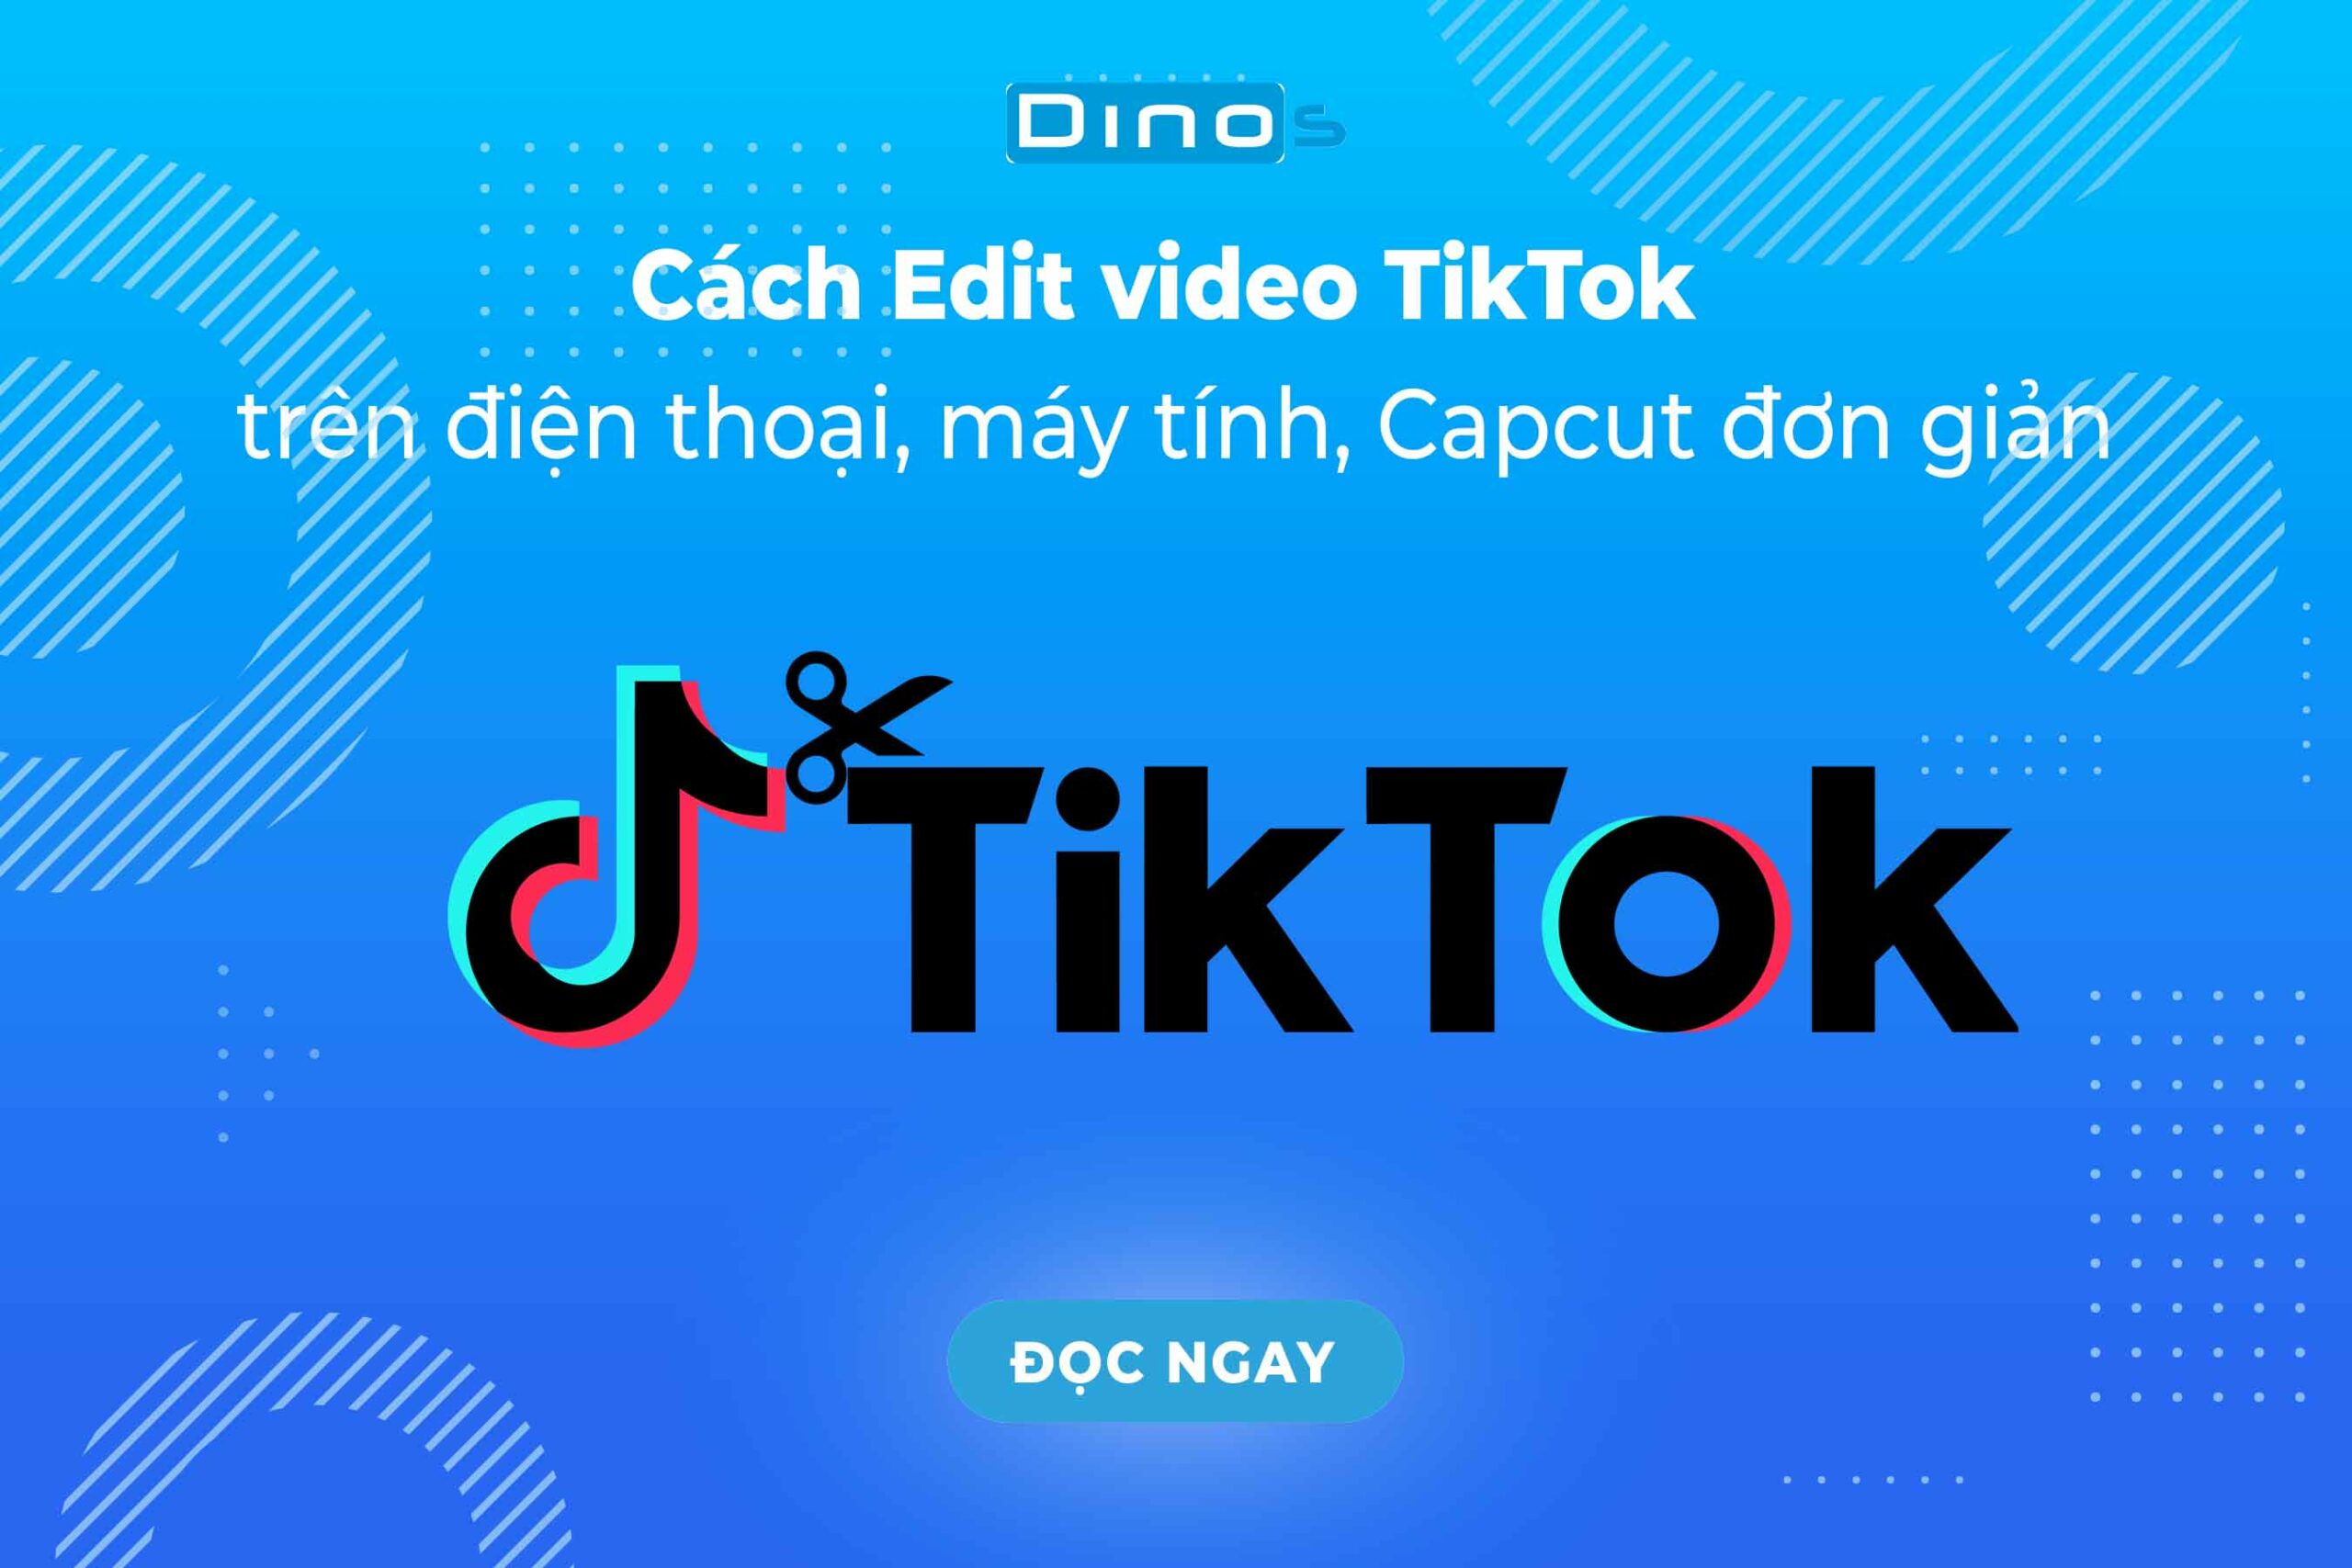 Cách Edit video tiktok trên điện thoại, máy tính, Capcut đơn giản